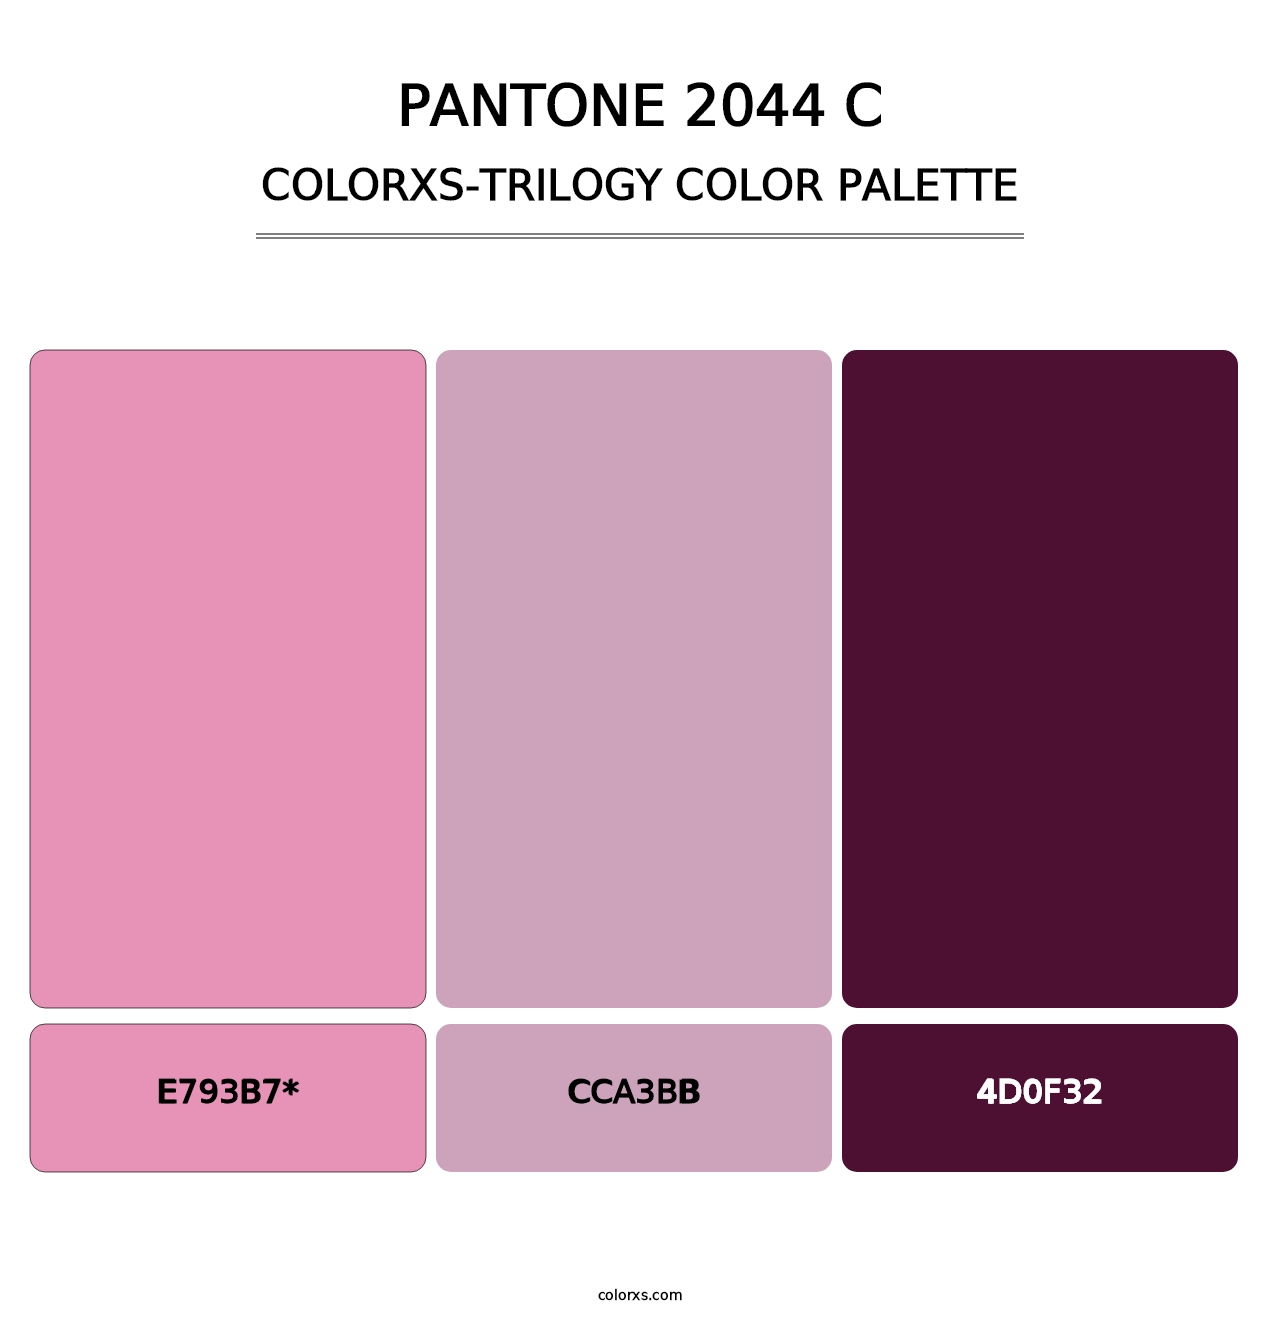 PANTONE 2044 C - Colorxs Trilogy Palette